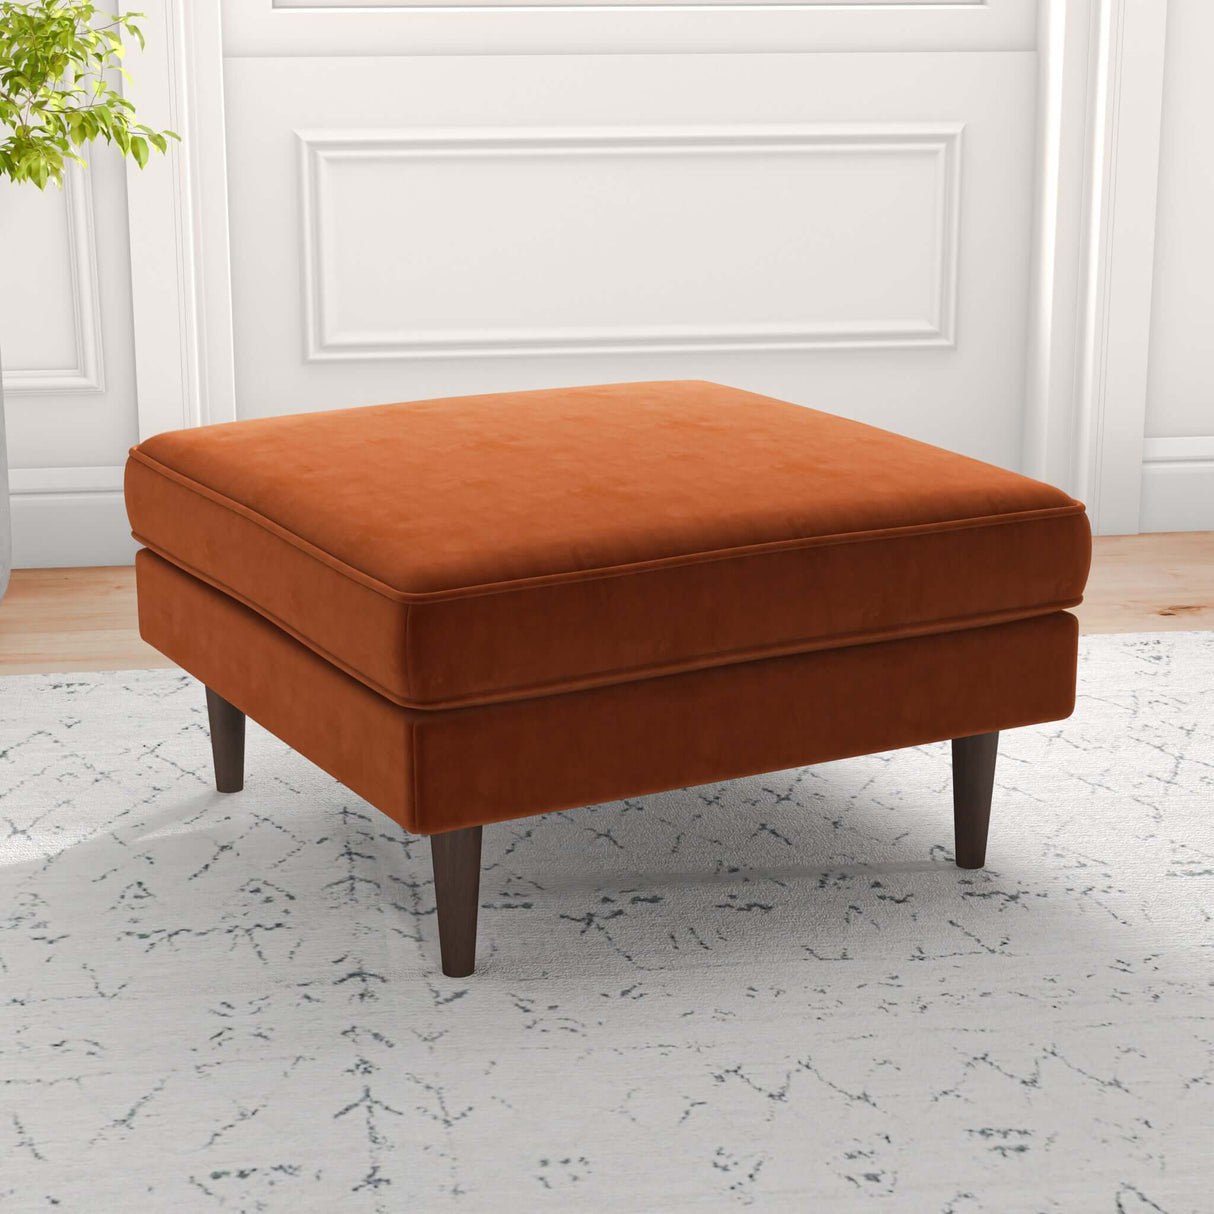 Amber Mid-Century Modern Square Upholstered Ottoman Teal Velvet